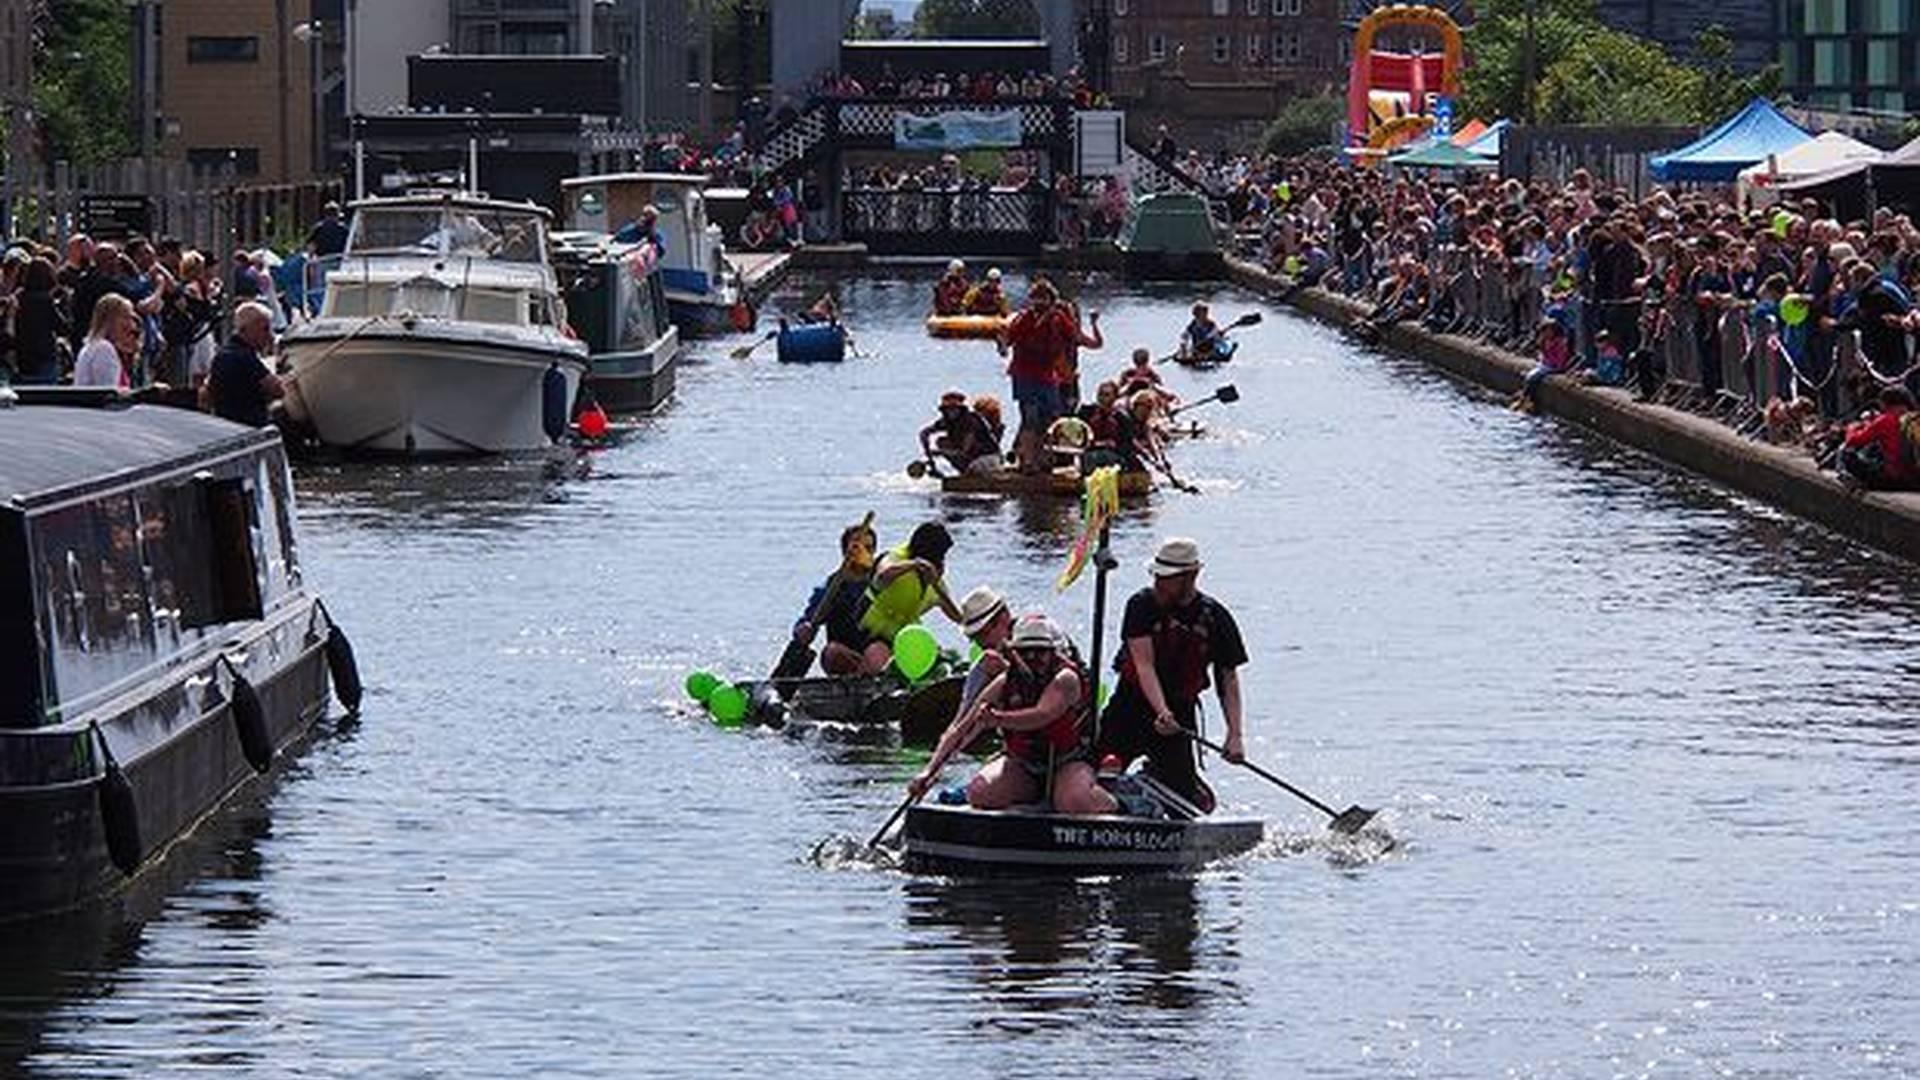 Edinburgh Canal Festival and Raft Race photo